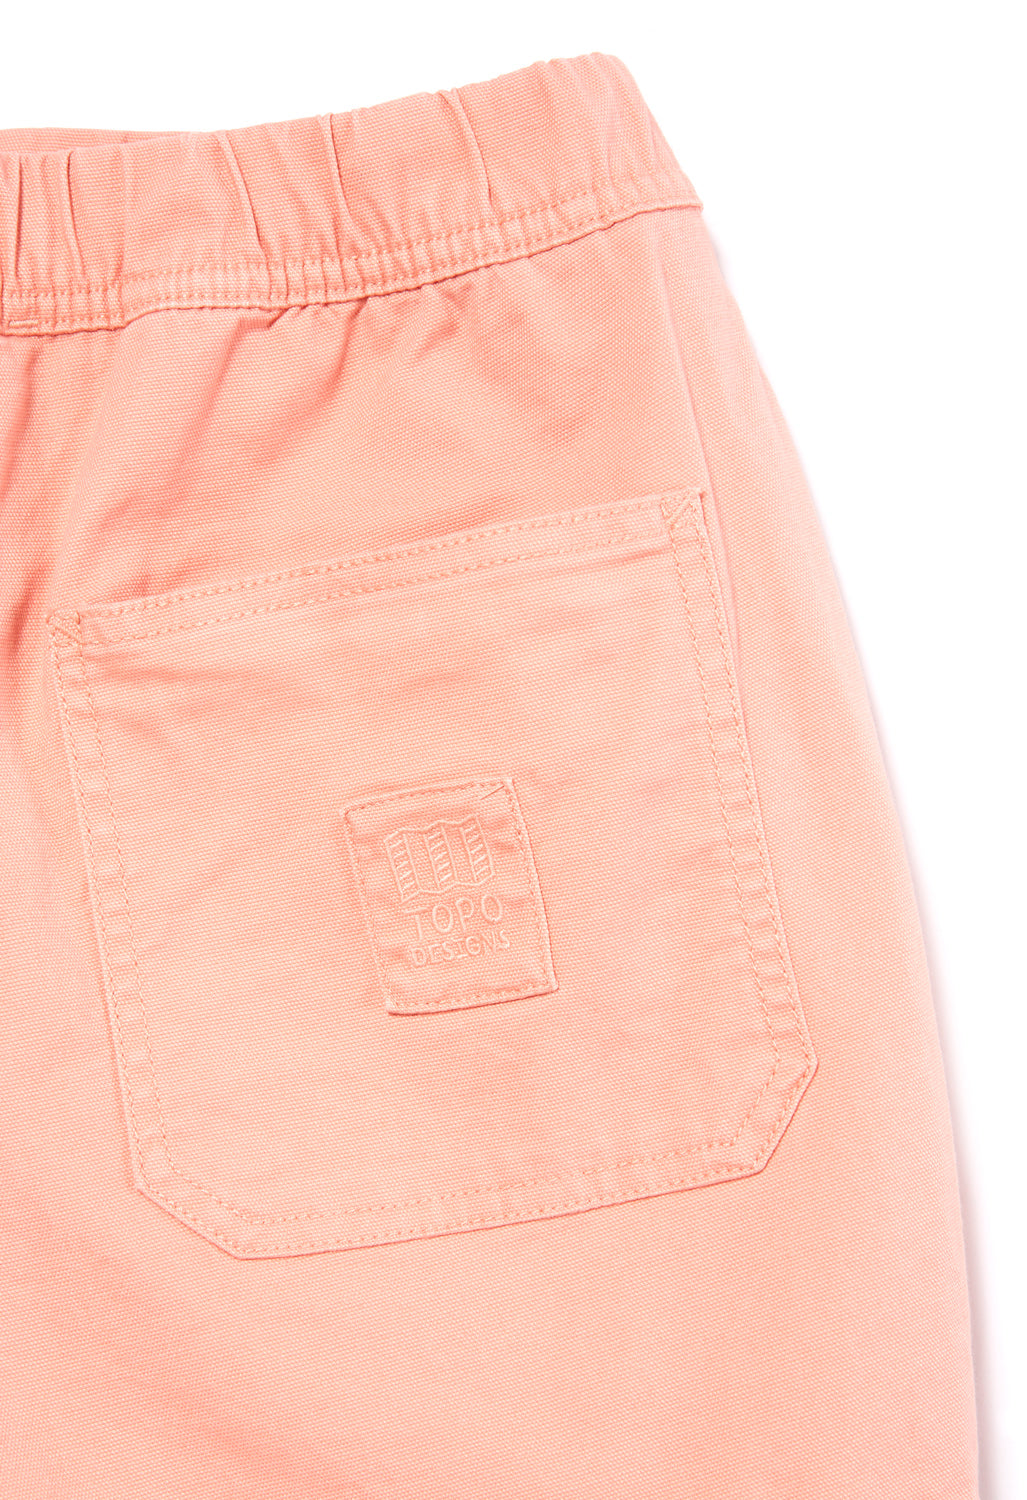 Topo Designs Dirt Women's Shorts - Peach